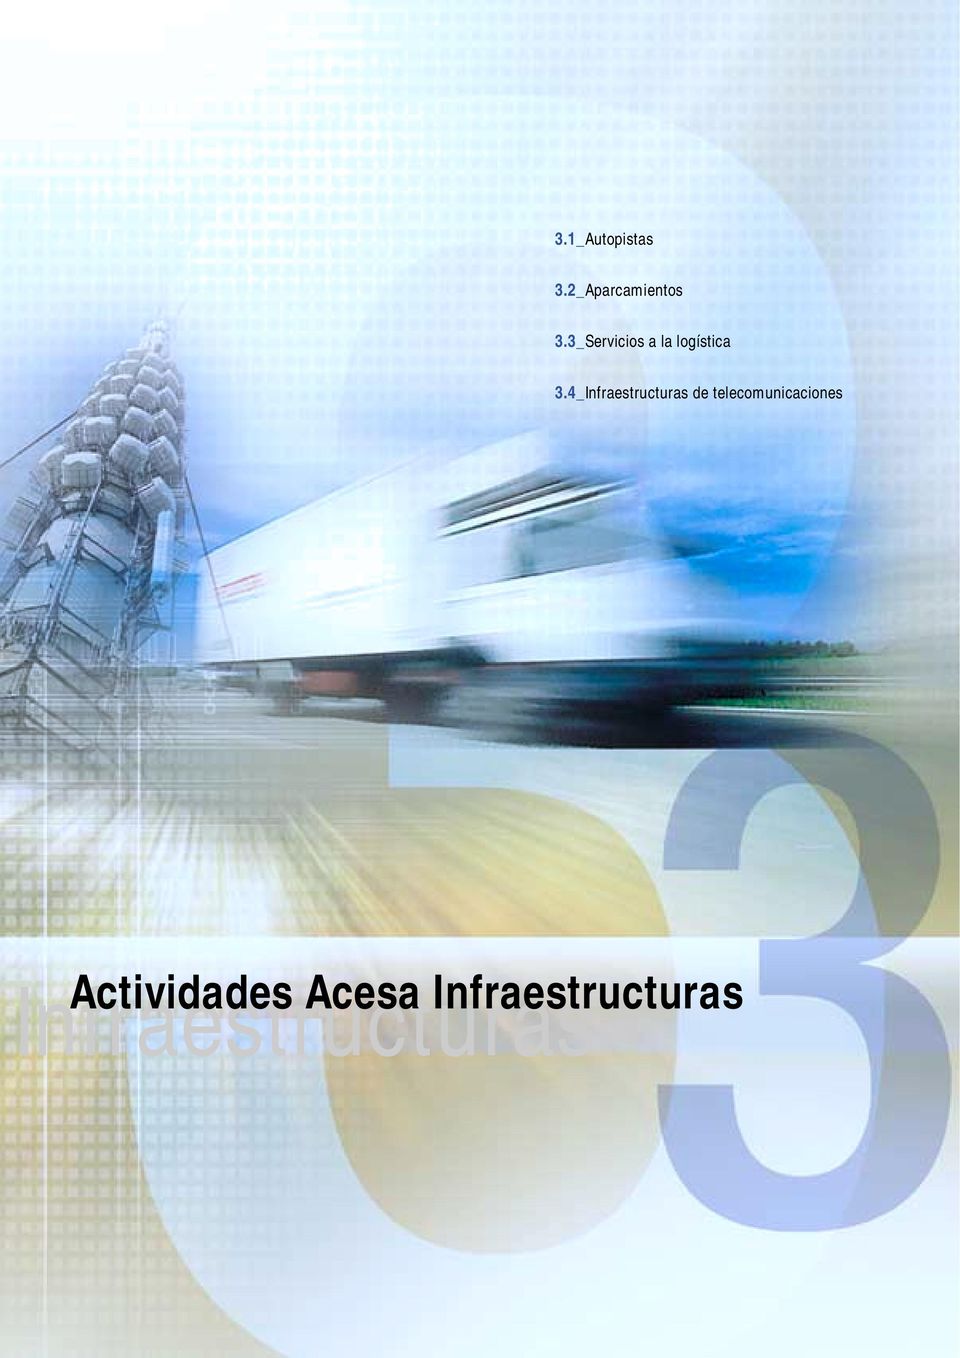 4_Infraestructuras de